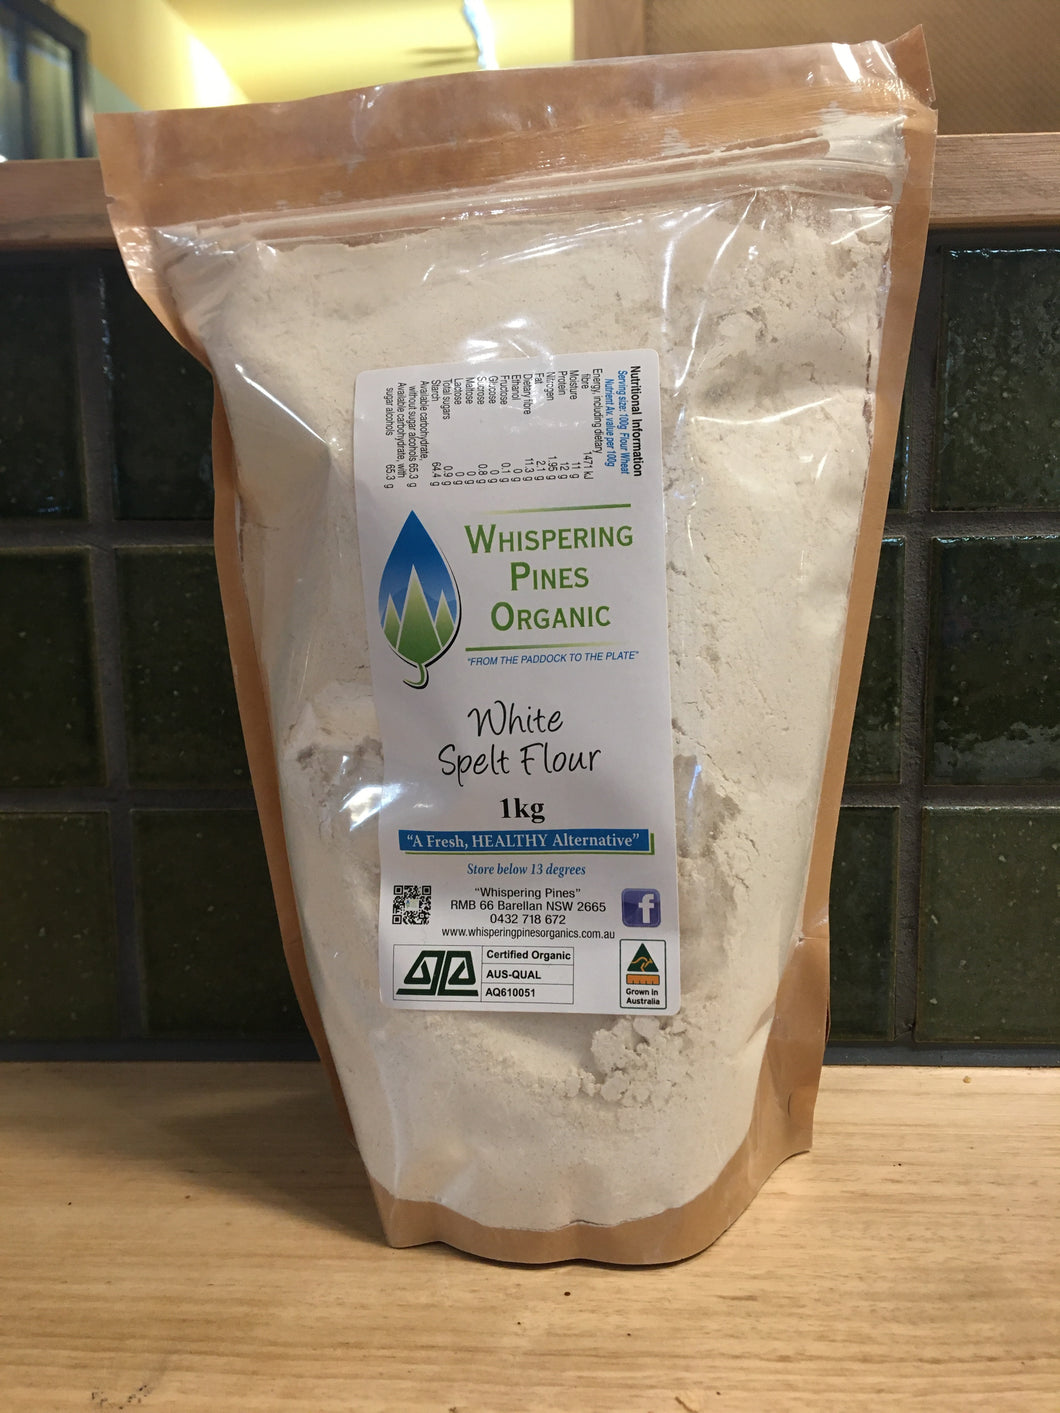 Whispering Pines Organic White Spelt Flour 1kg